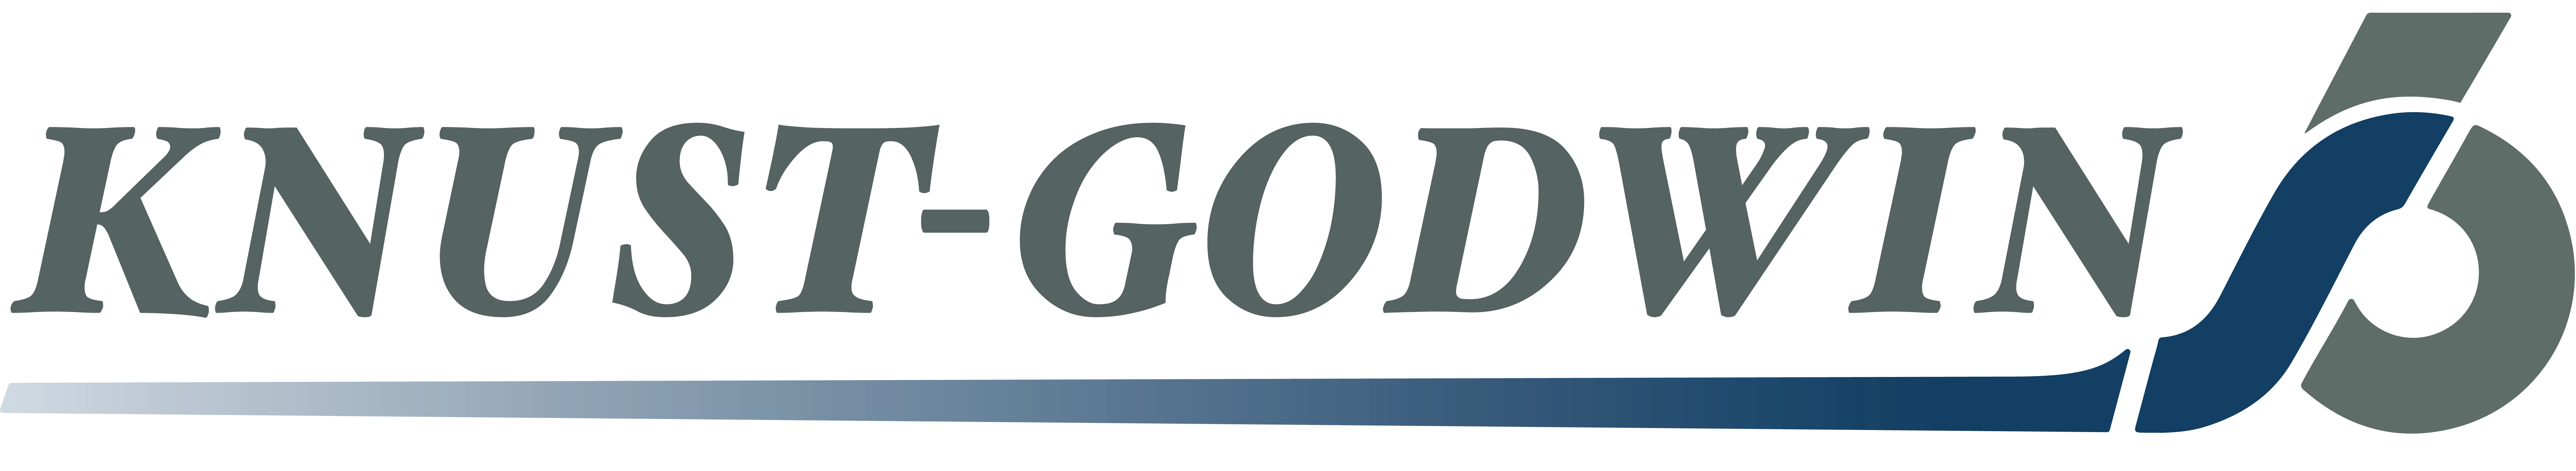 Knust-Godwin logo